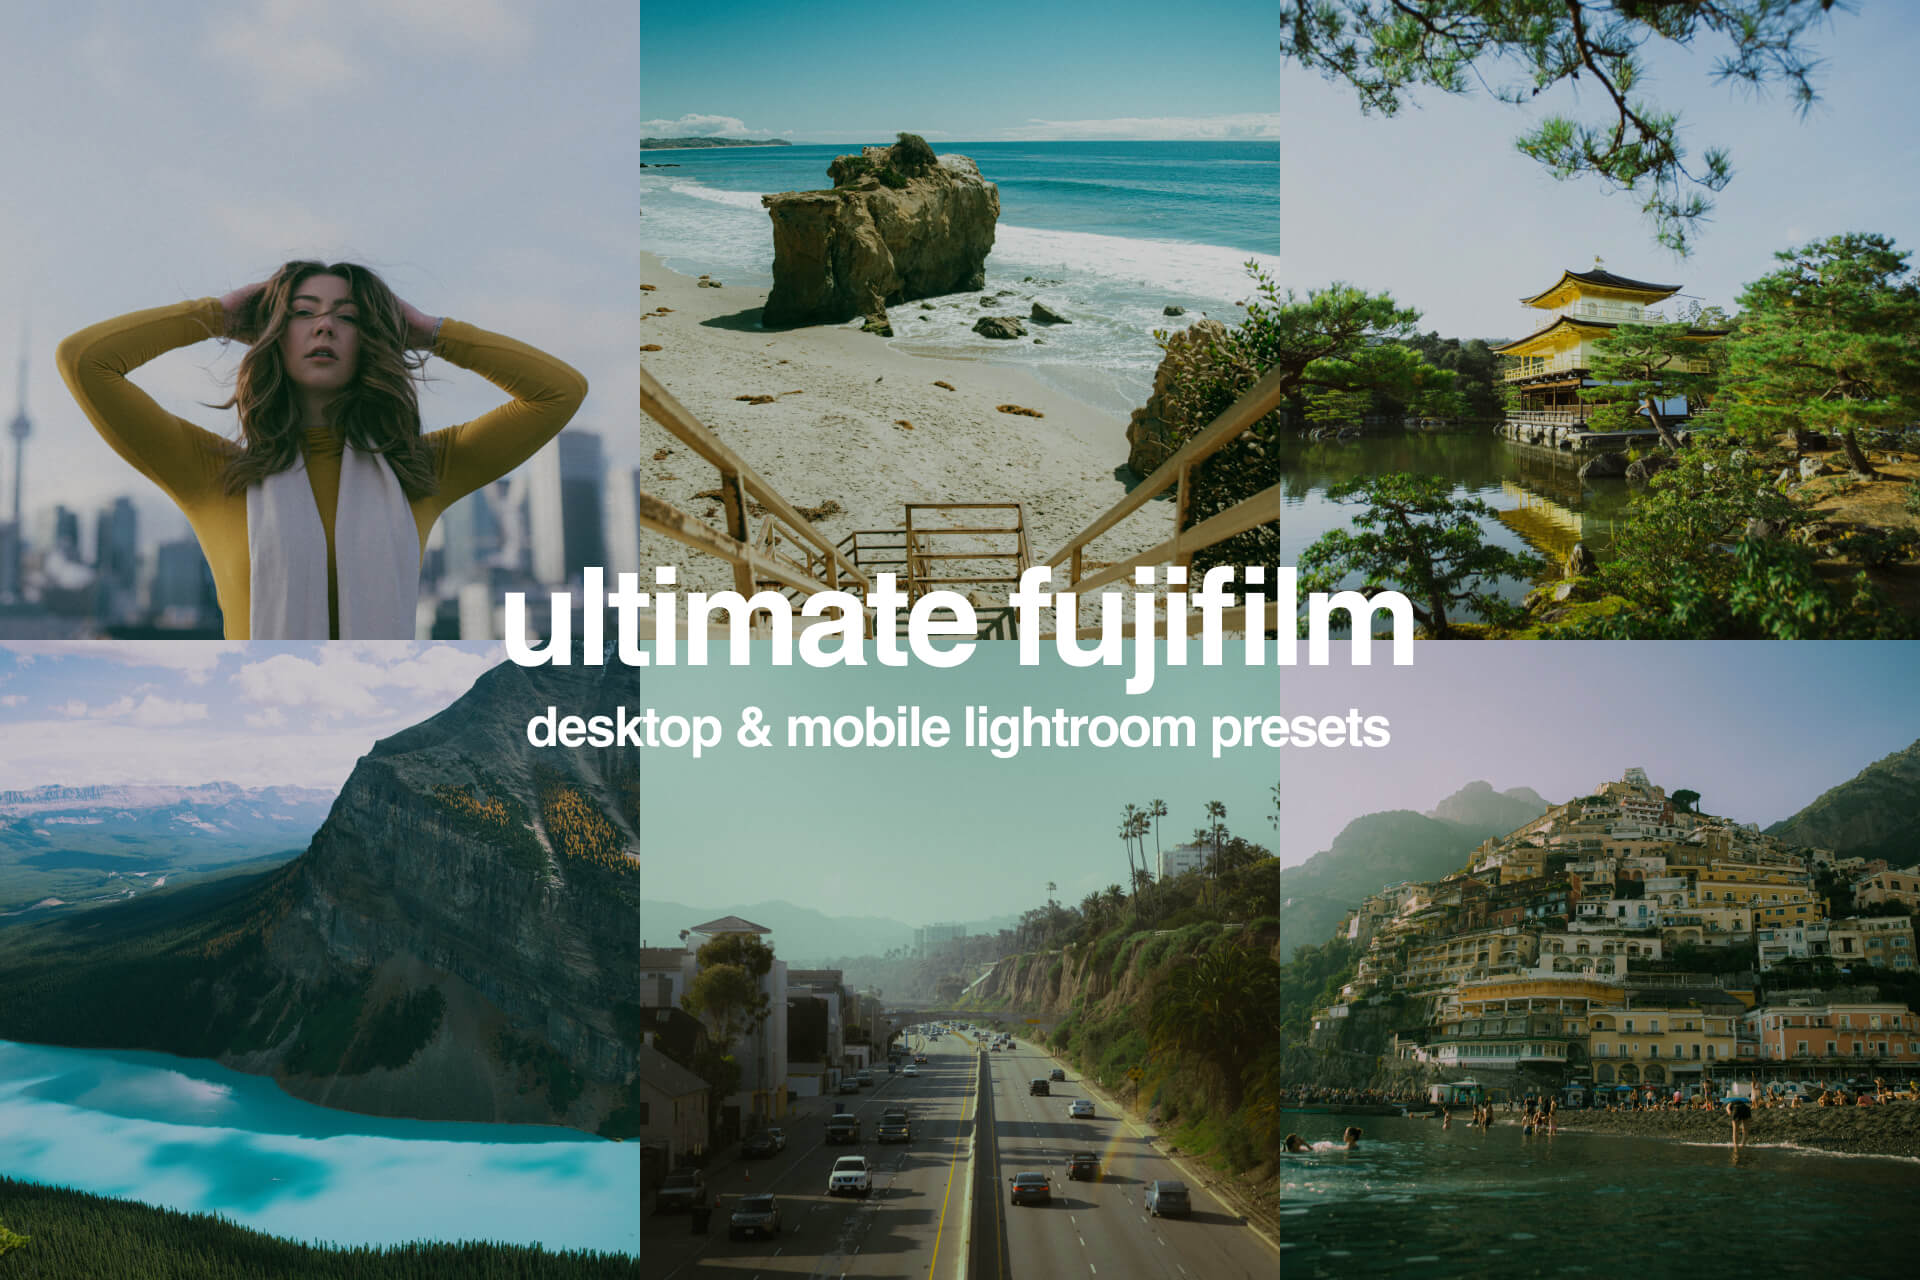 The Ultimate Fujifilm Preset Pack